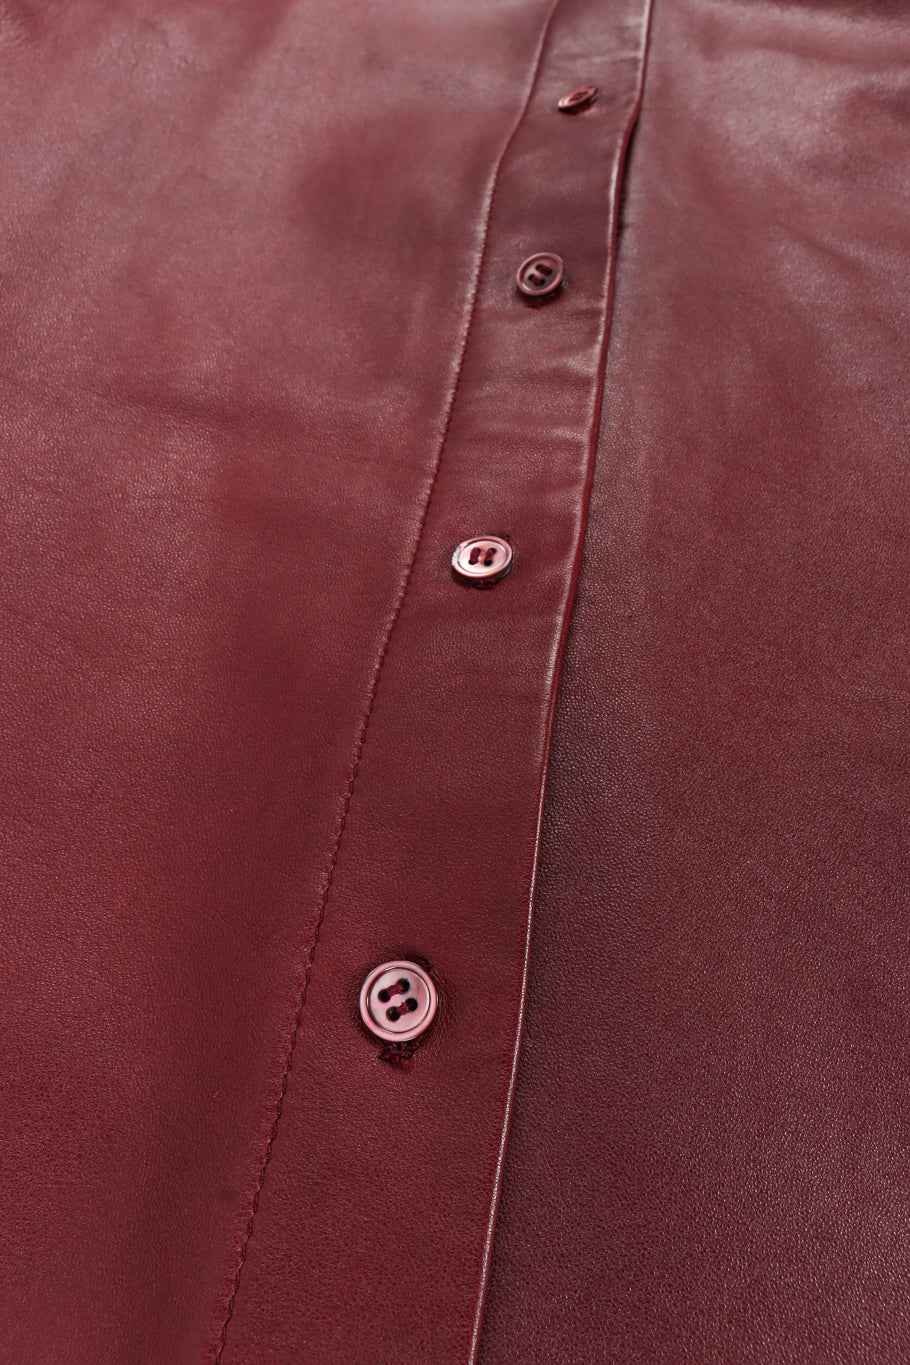 Vintage Calvin Klein Leather Shirt & Pant Set top buttons @ Recess LA